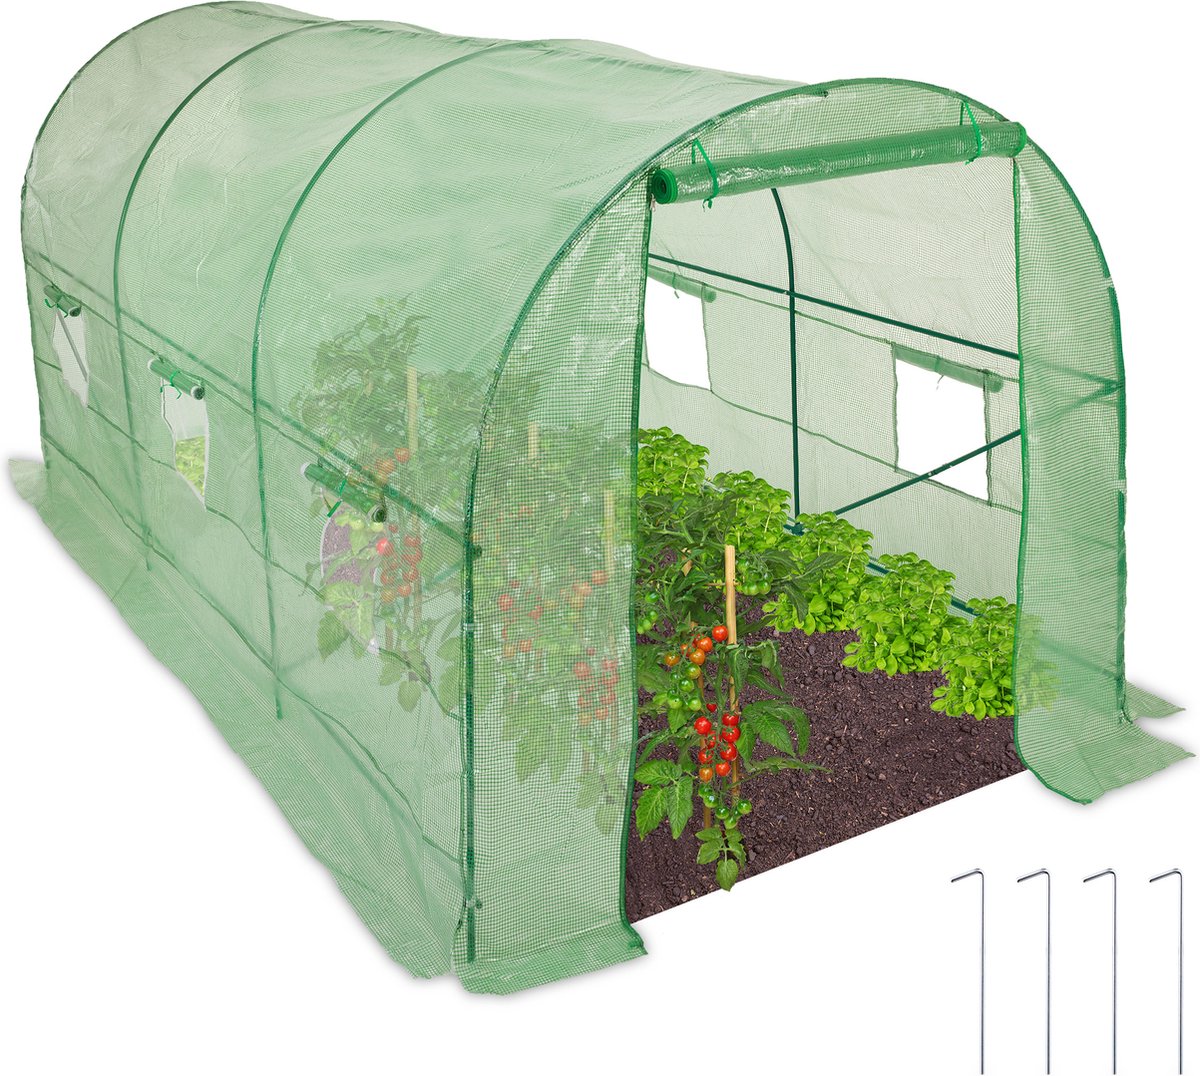 Relaxdays tunnelkas folie - grote tuinkas - 2x4 m tomatenkas - foliekas groen - kweekkas - Relaxdays